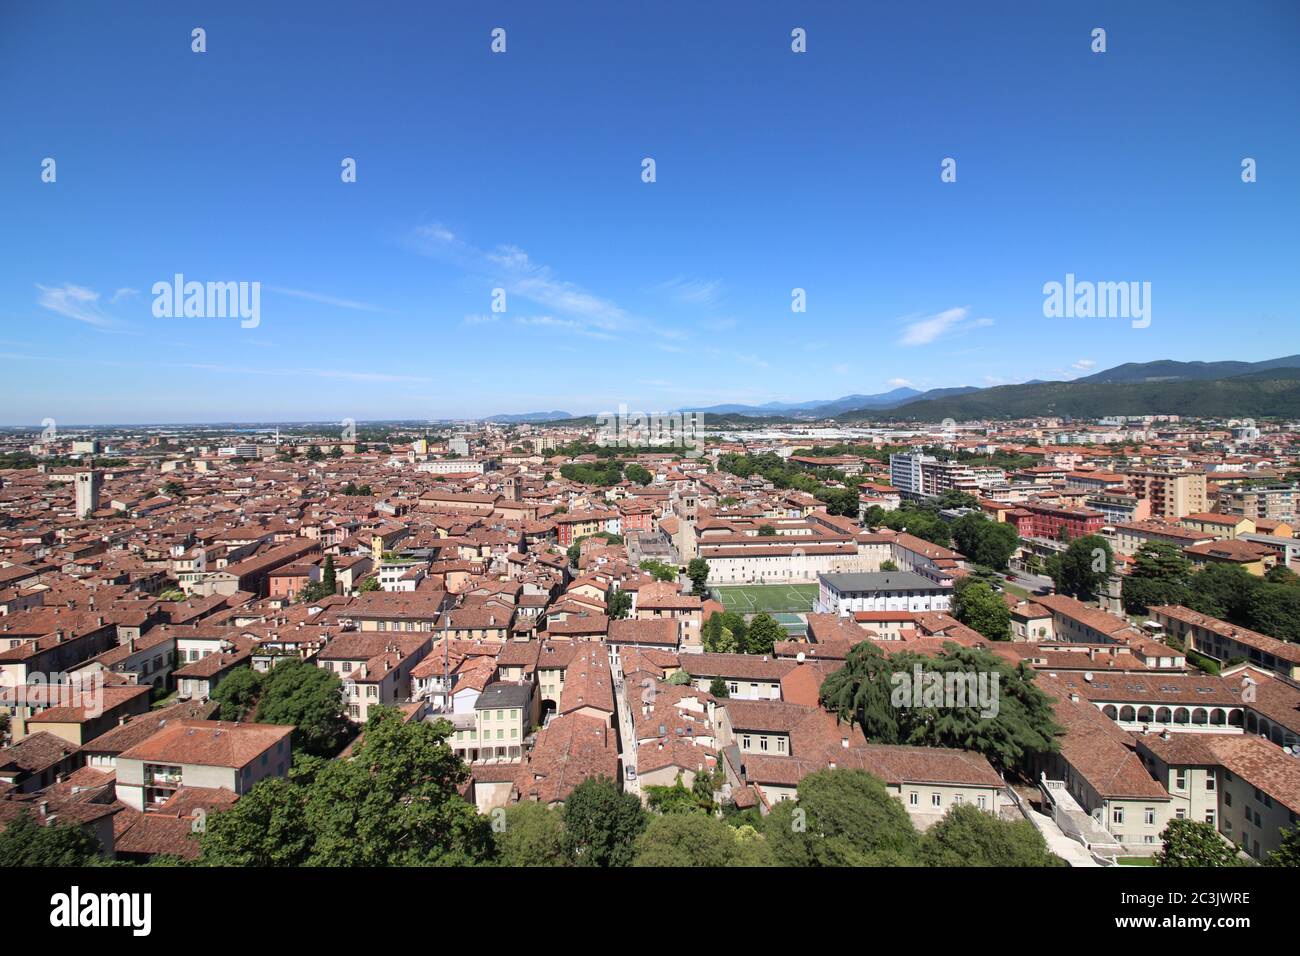 Vue aérienne de la ville de Brescia en Italie du nord Banque D'Images